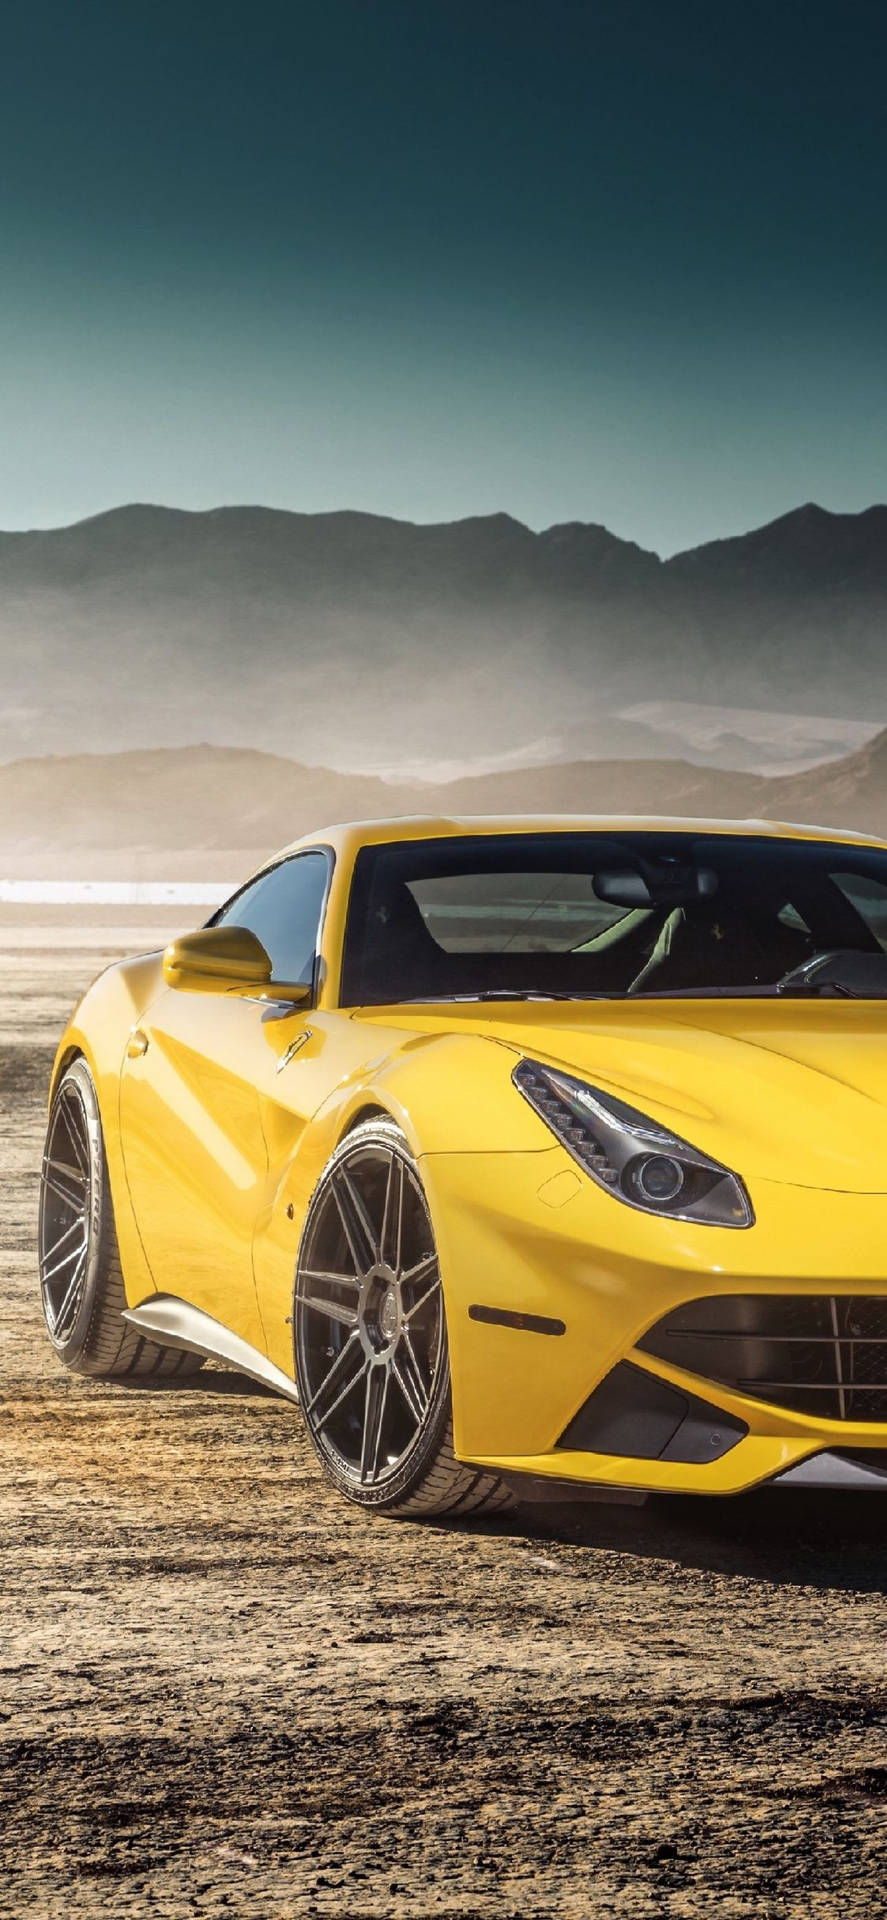 Stunning Image Of Yellow Ferrari Iphone Wallpaper